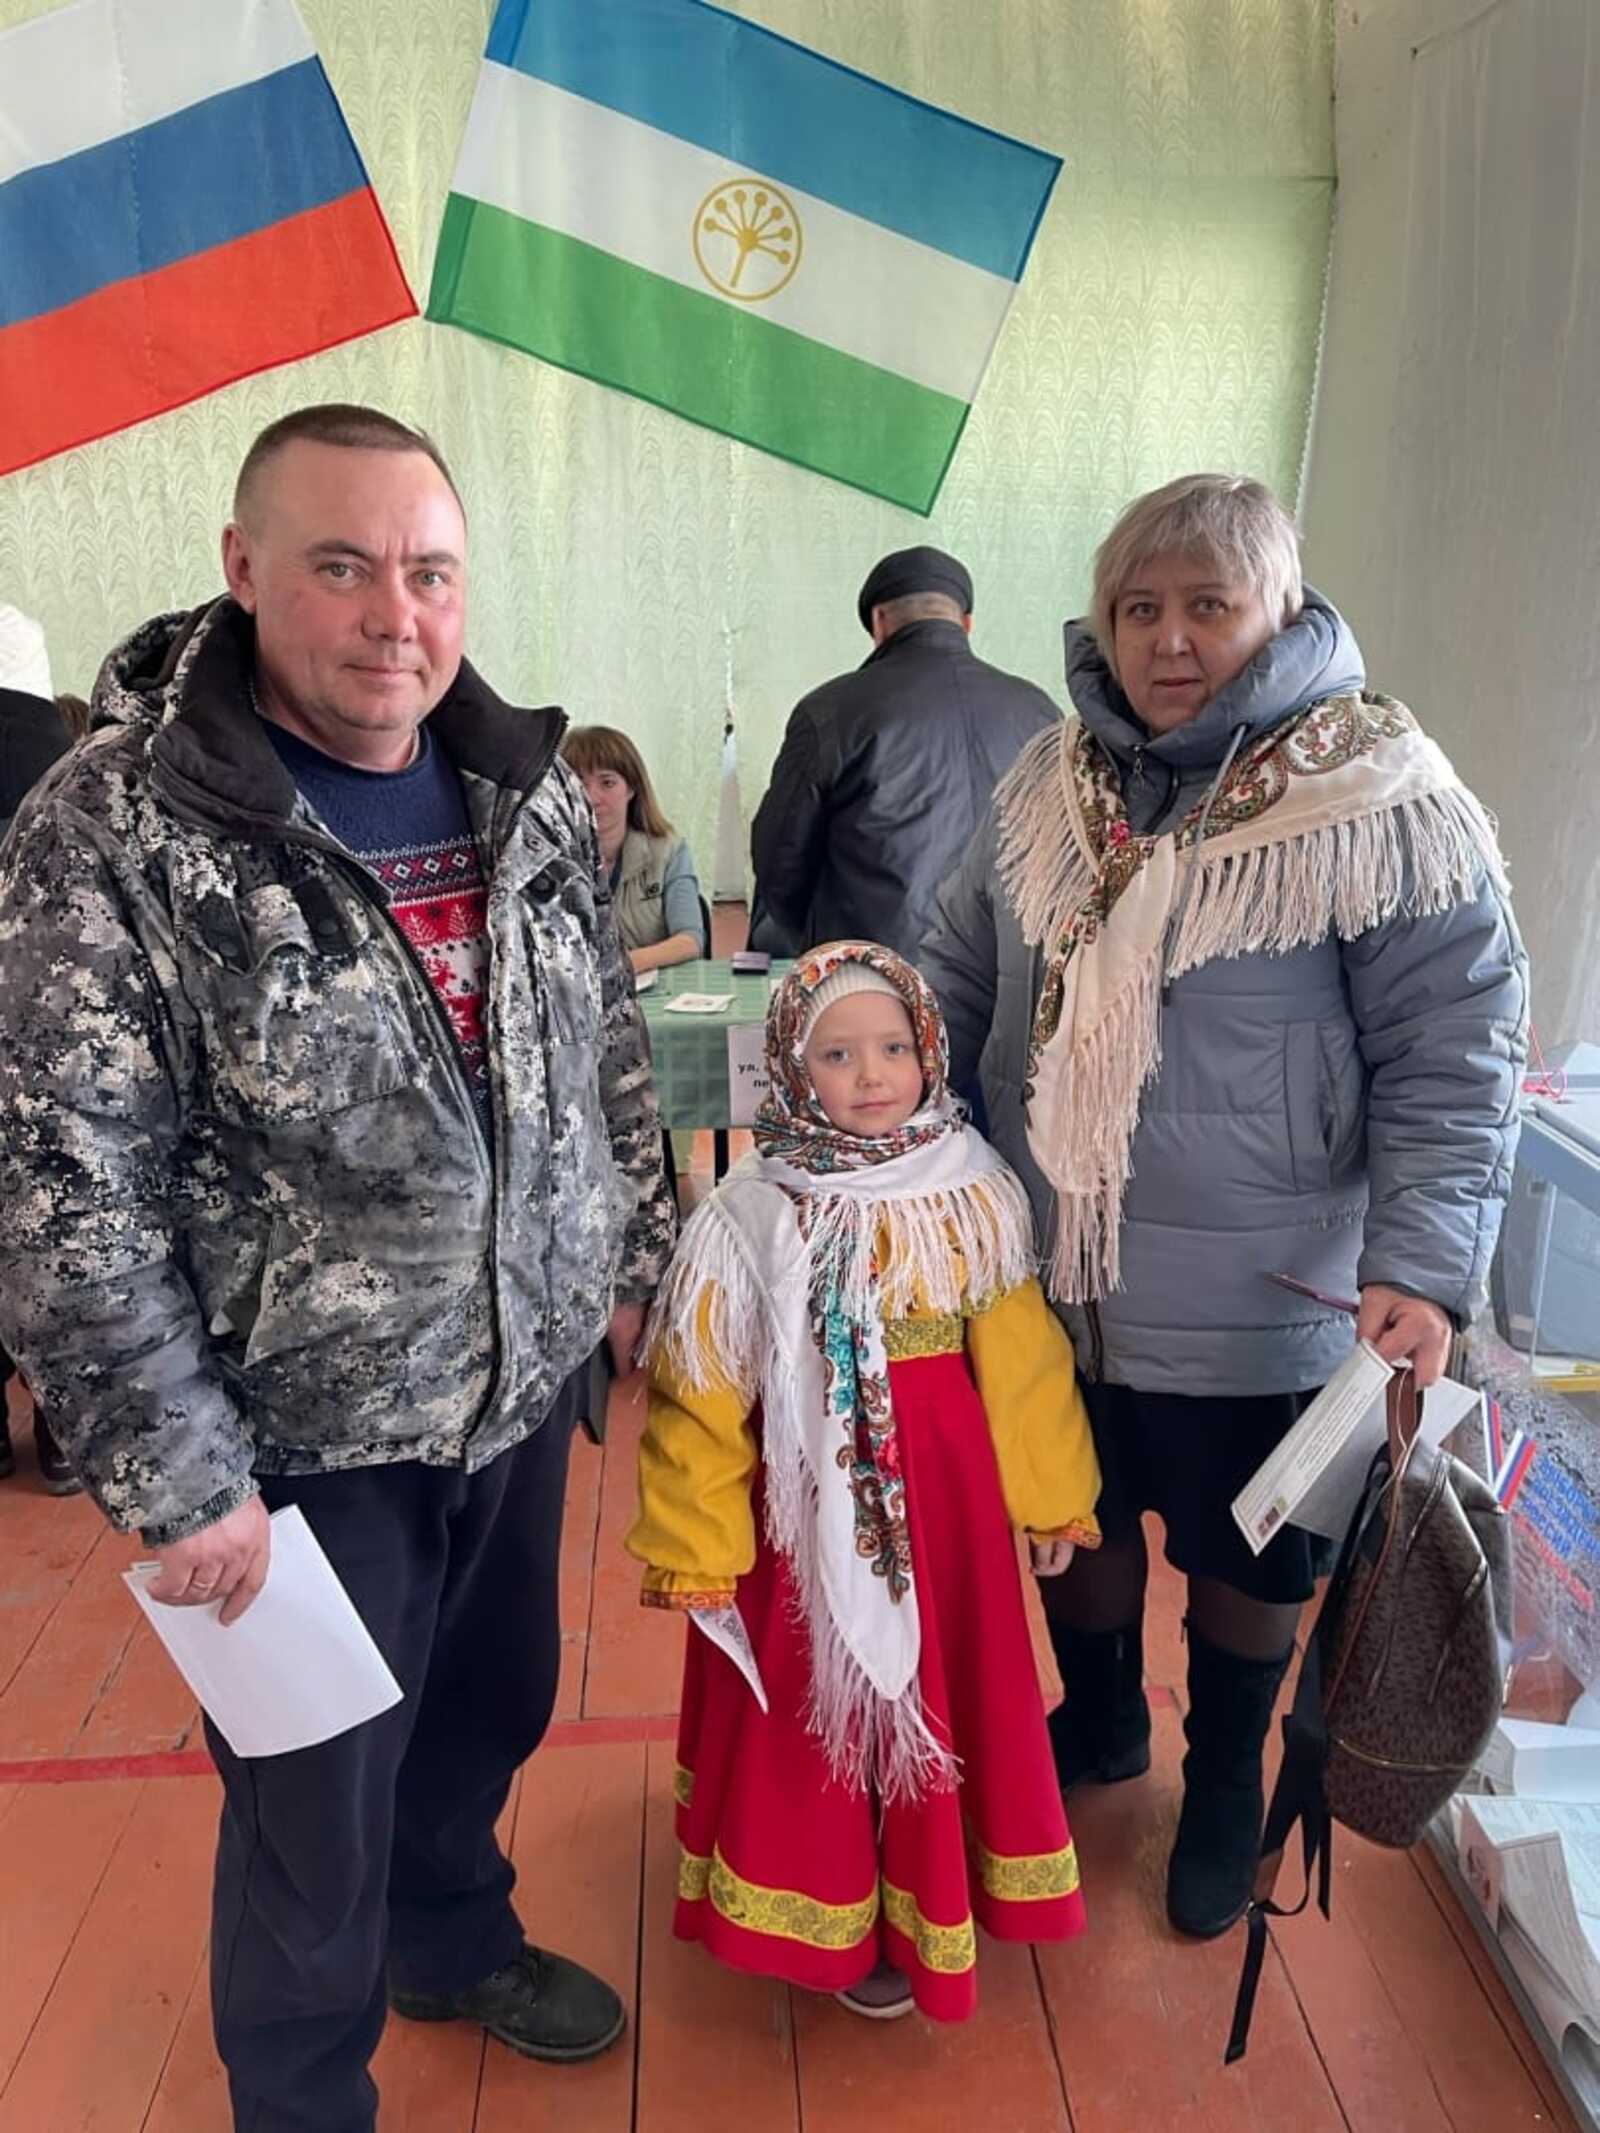 Шестилетняя Саша из Месягутово пришла на избирательный участок в национальном костюме